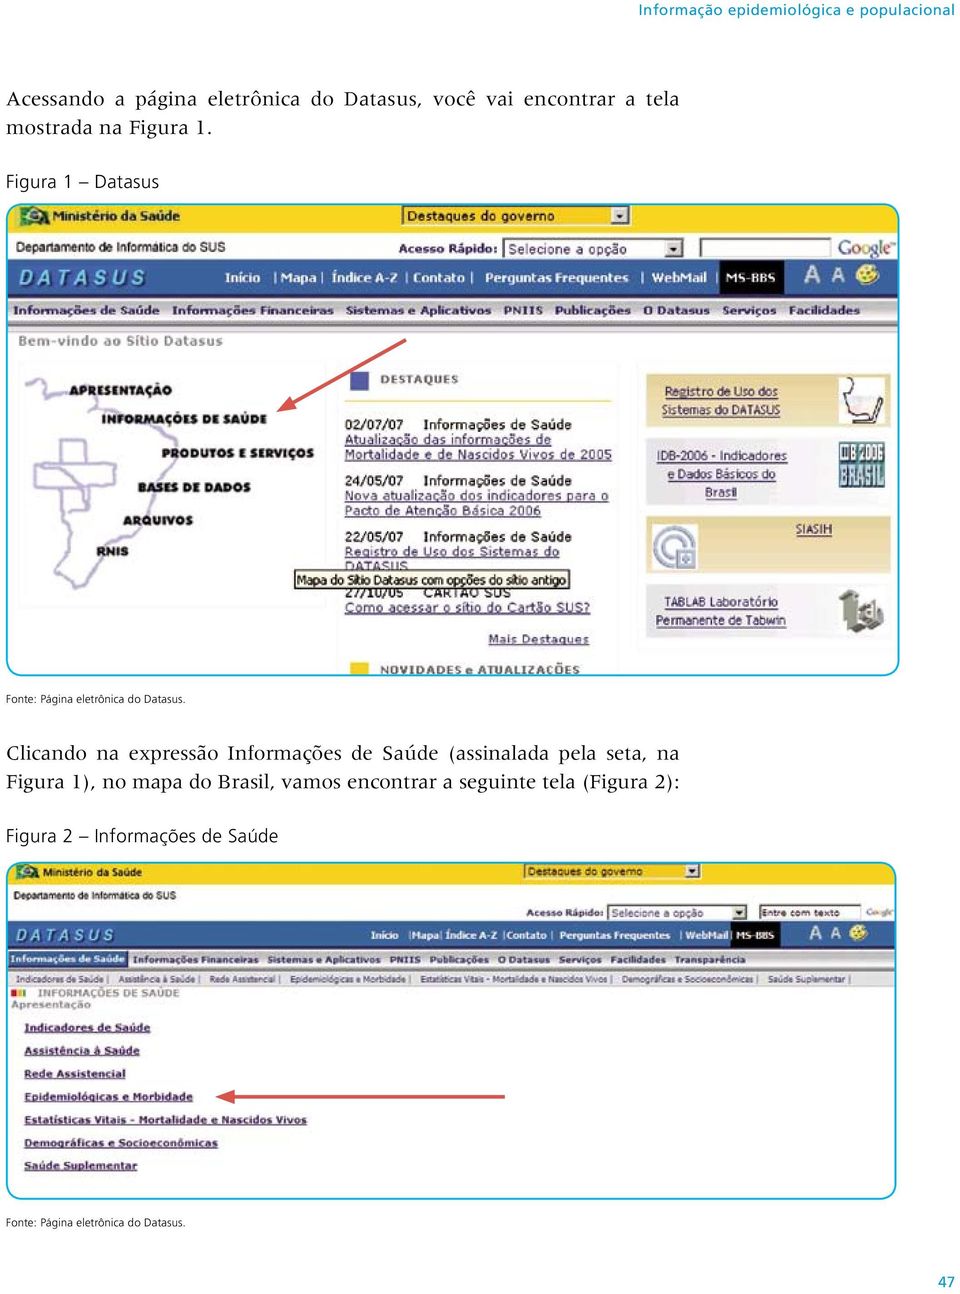 Clicando na expressão Informações de Saúde (assinalada pela seta, na Figura 1), no mapa do Brasil,